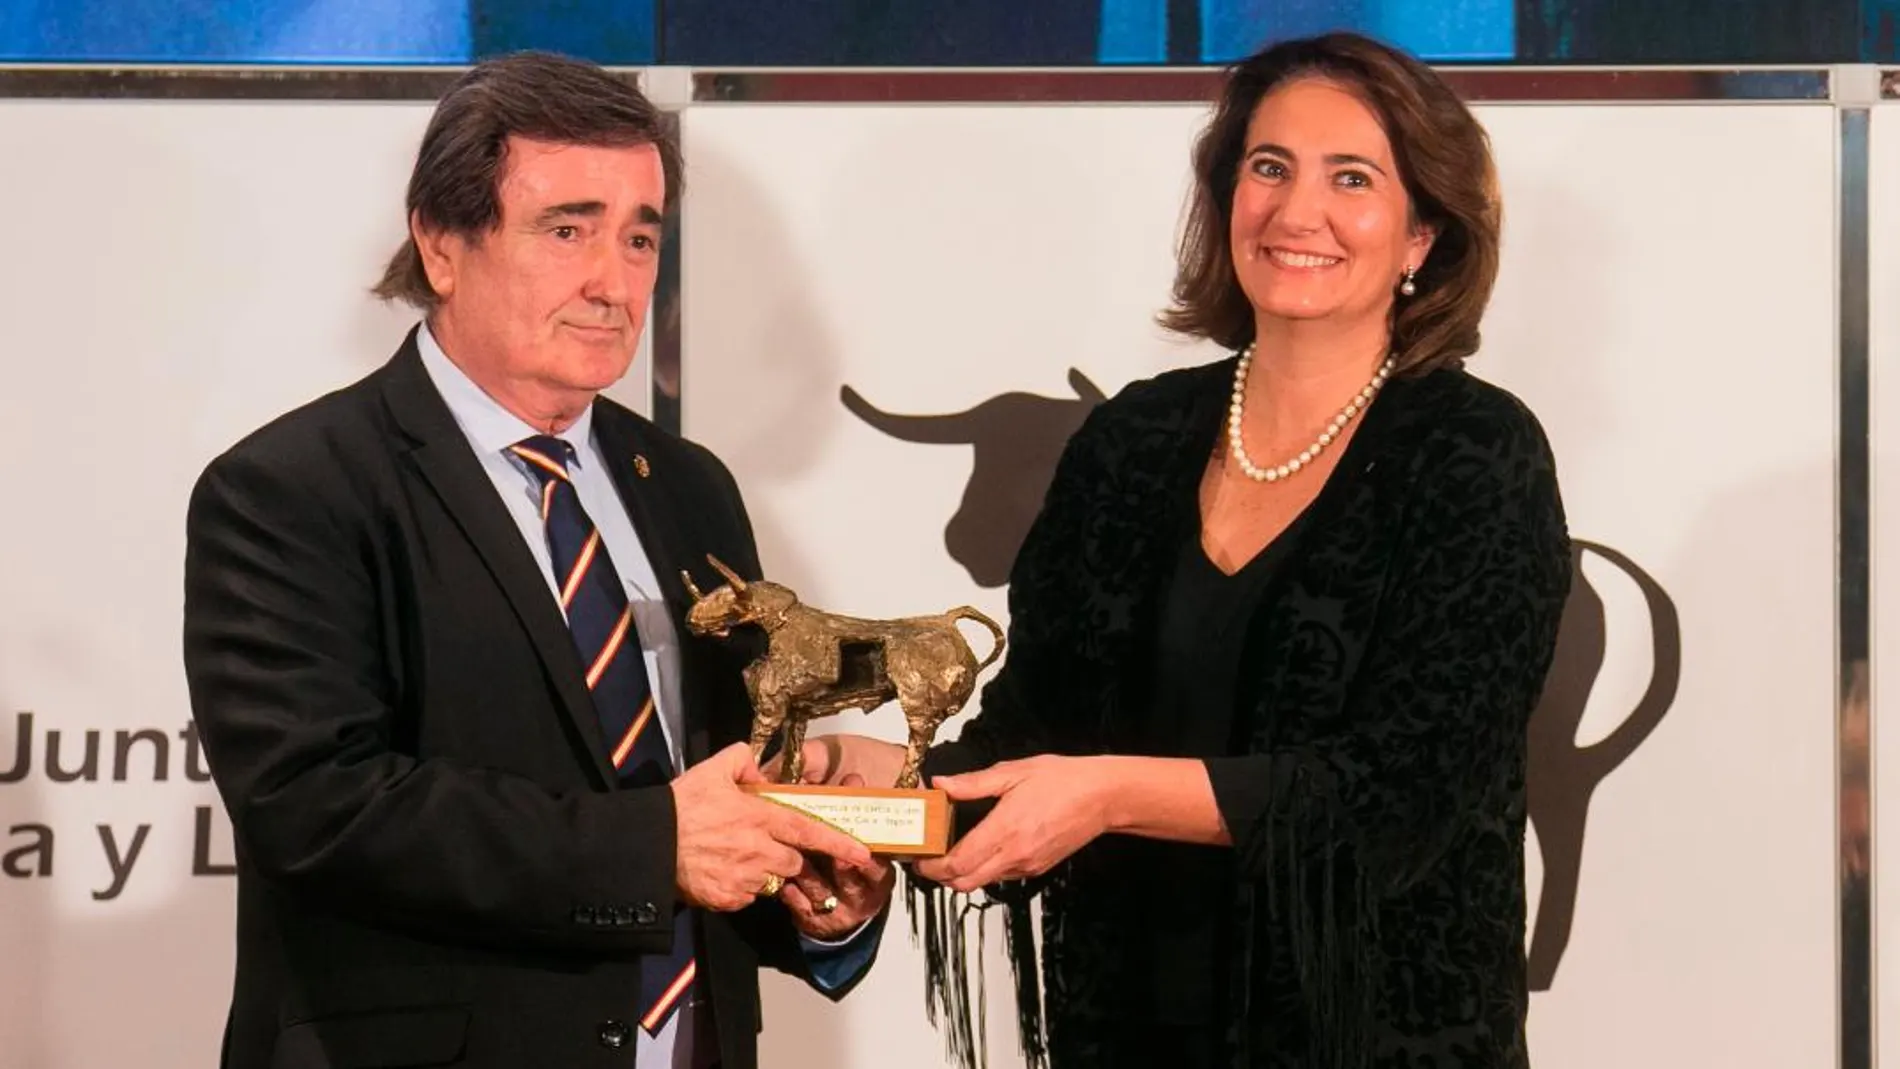 La consejera de Cultura y Turismo, Josefa García Cirac, hace entrega del premio al alcalde de Cuéllar, Jesús García